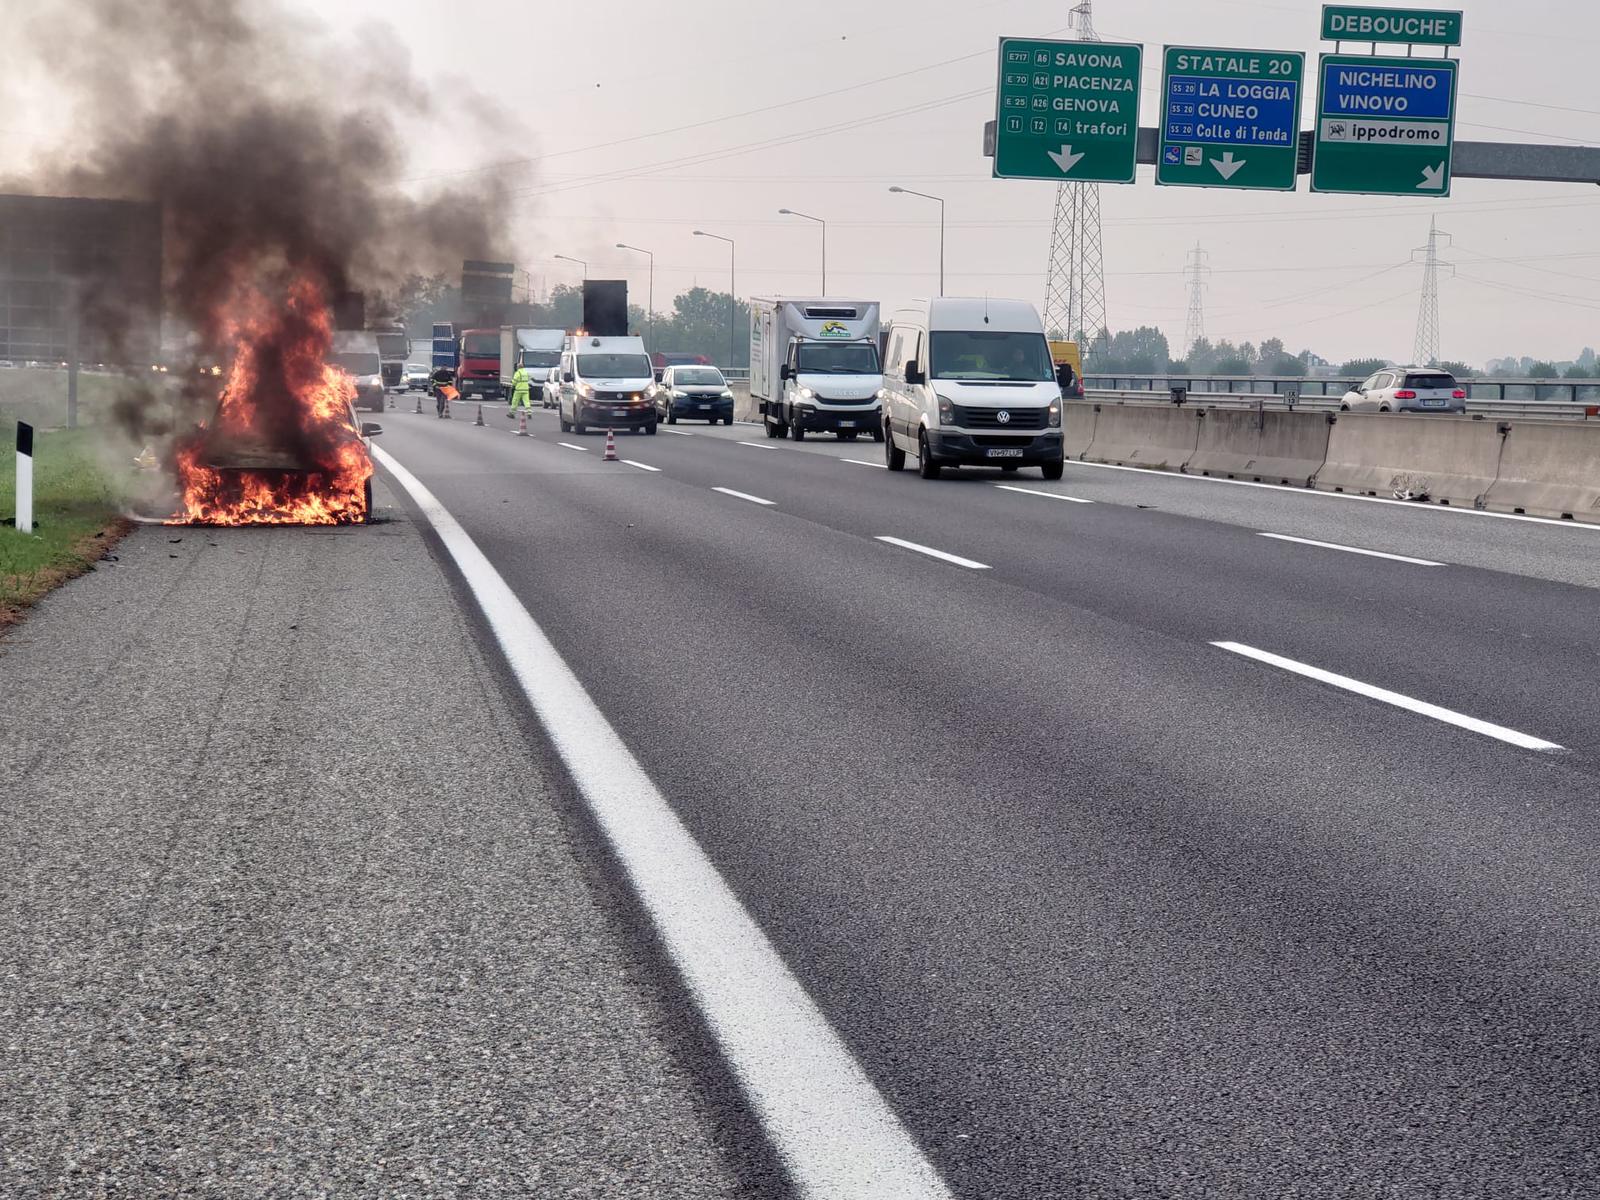 NICHELINO – Va a fuoco la macchina in tangenziale a Debouché: guasto elettrico l’ipotesi